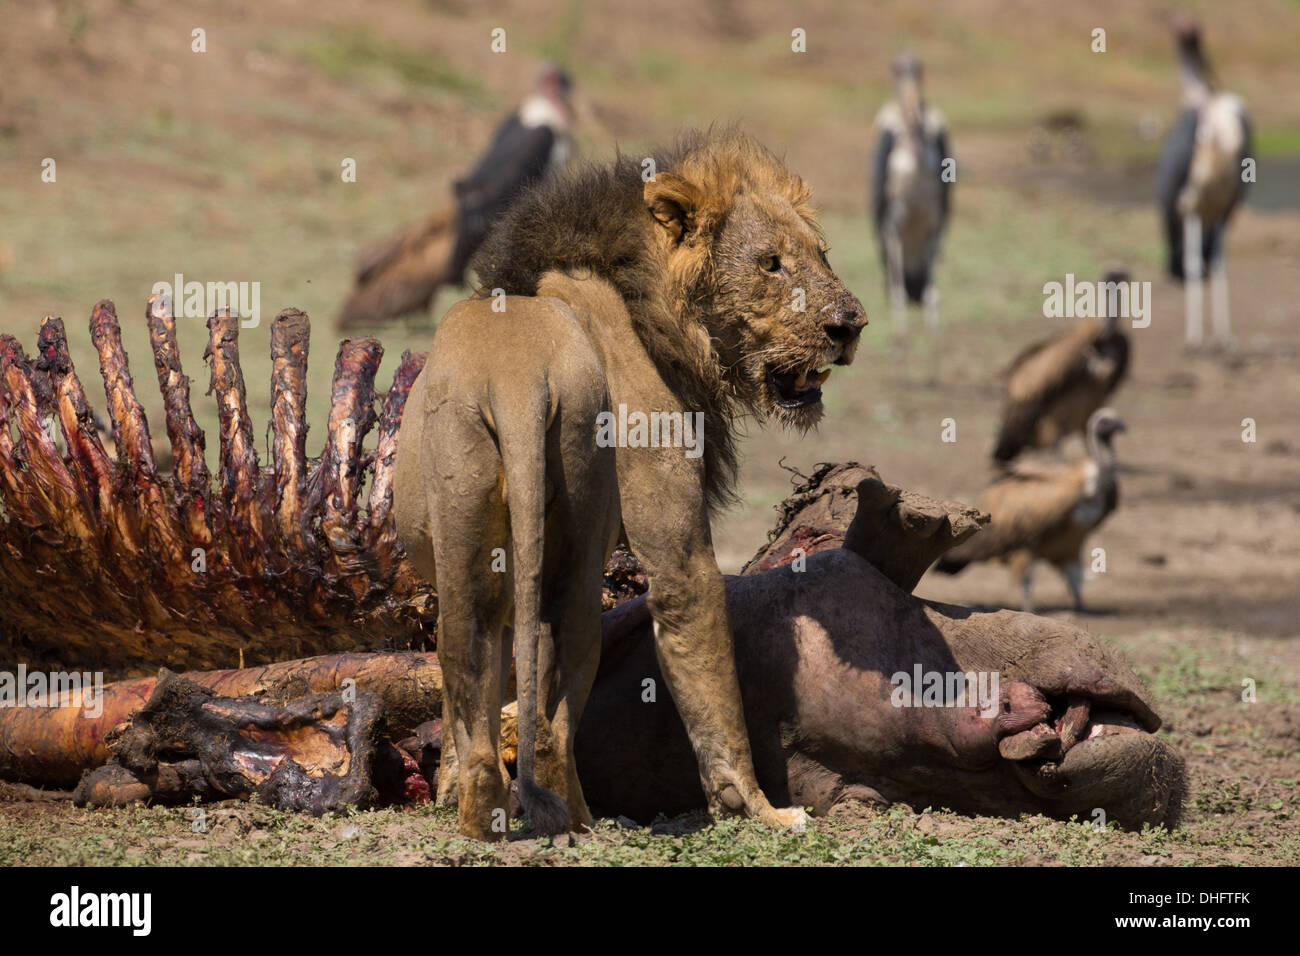 Leone maschio (Panthera leo) sulla carcassa di ippopotamo (Hippopotamus amphibius), gli avvoltoi e Marabou cicogne in background Foto Stock